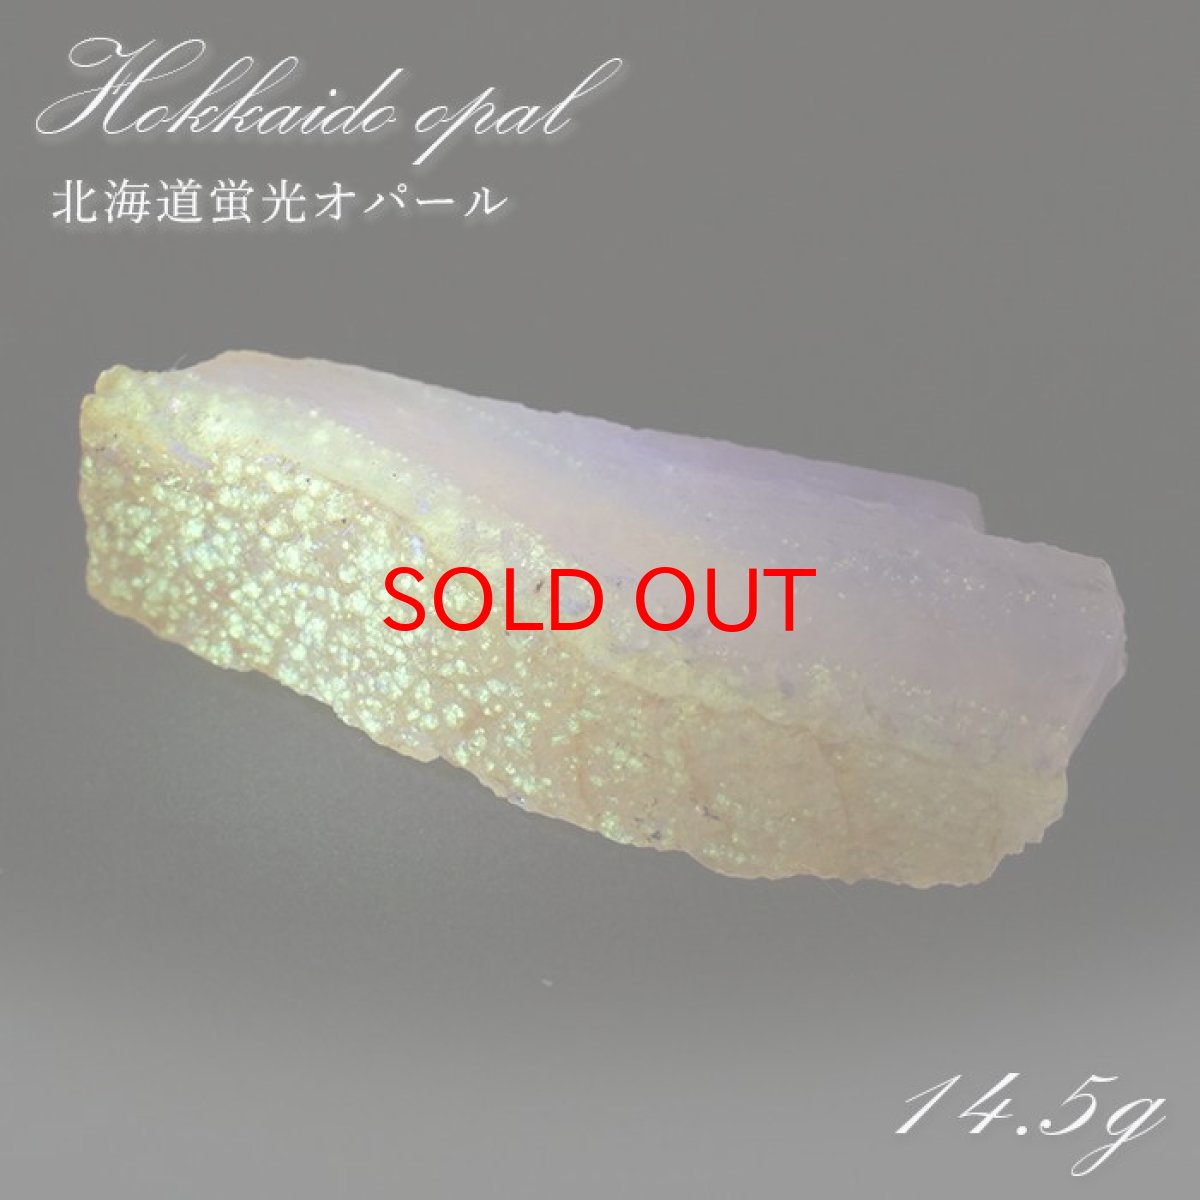 画像1: 北海道蛍光オパール 原石 約14.5g 北海道産 一点もの 天然石 パワーストーン カラーストーン (1)